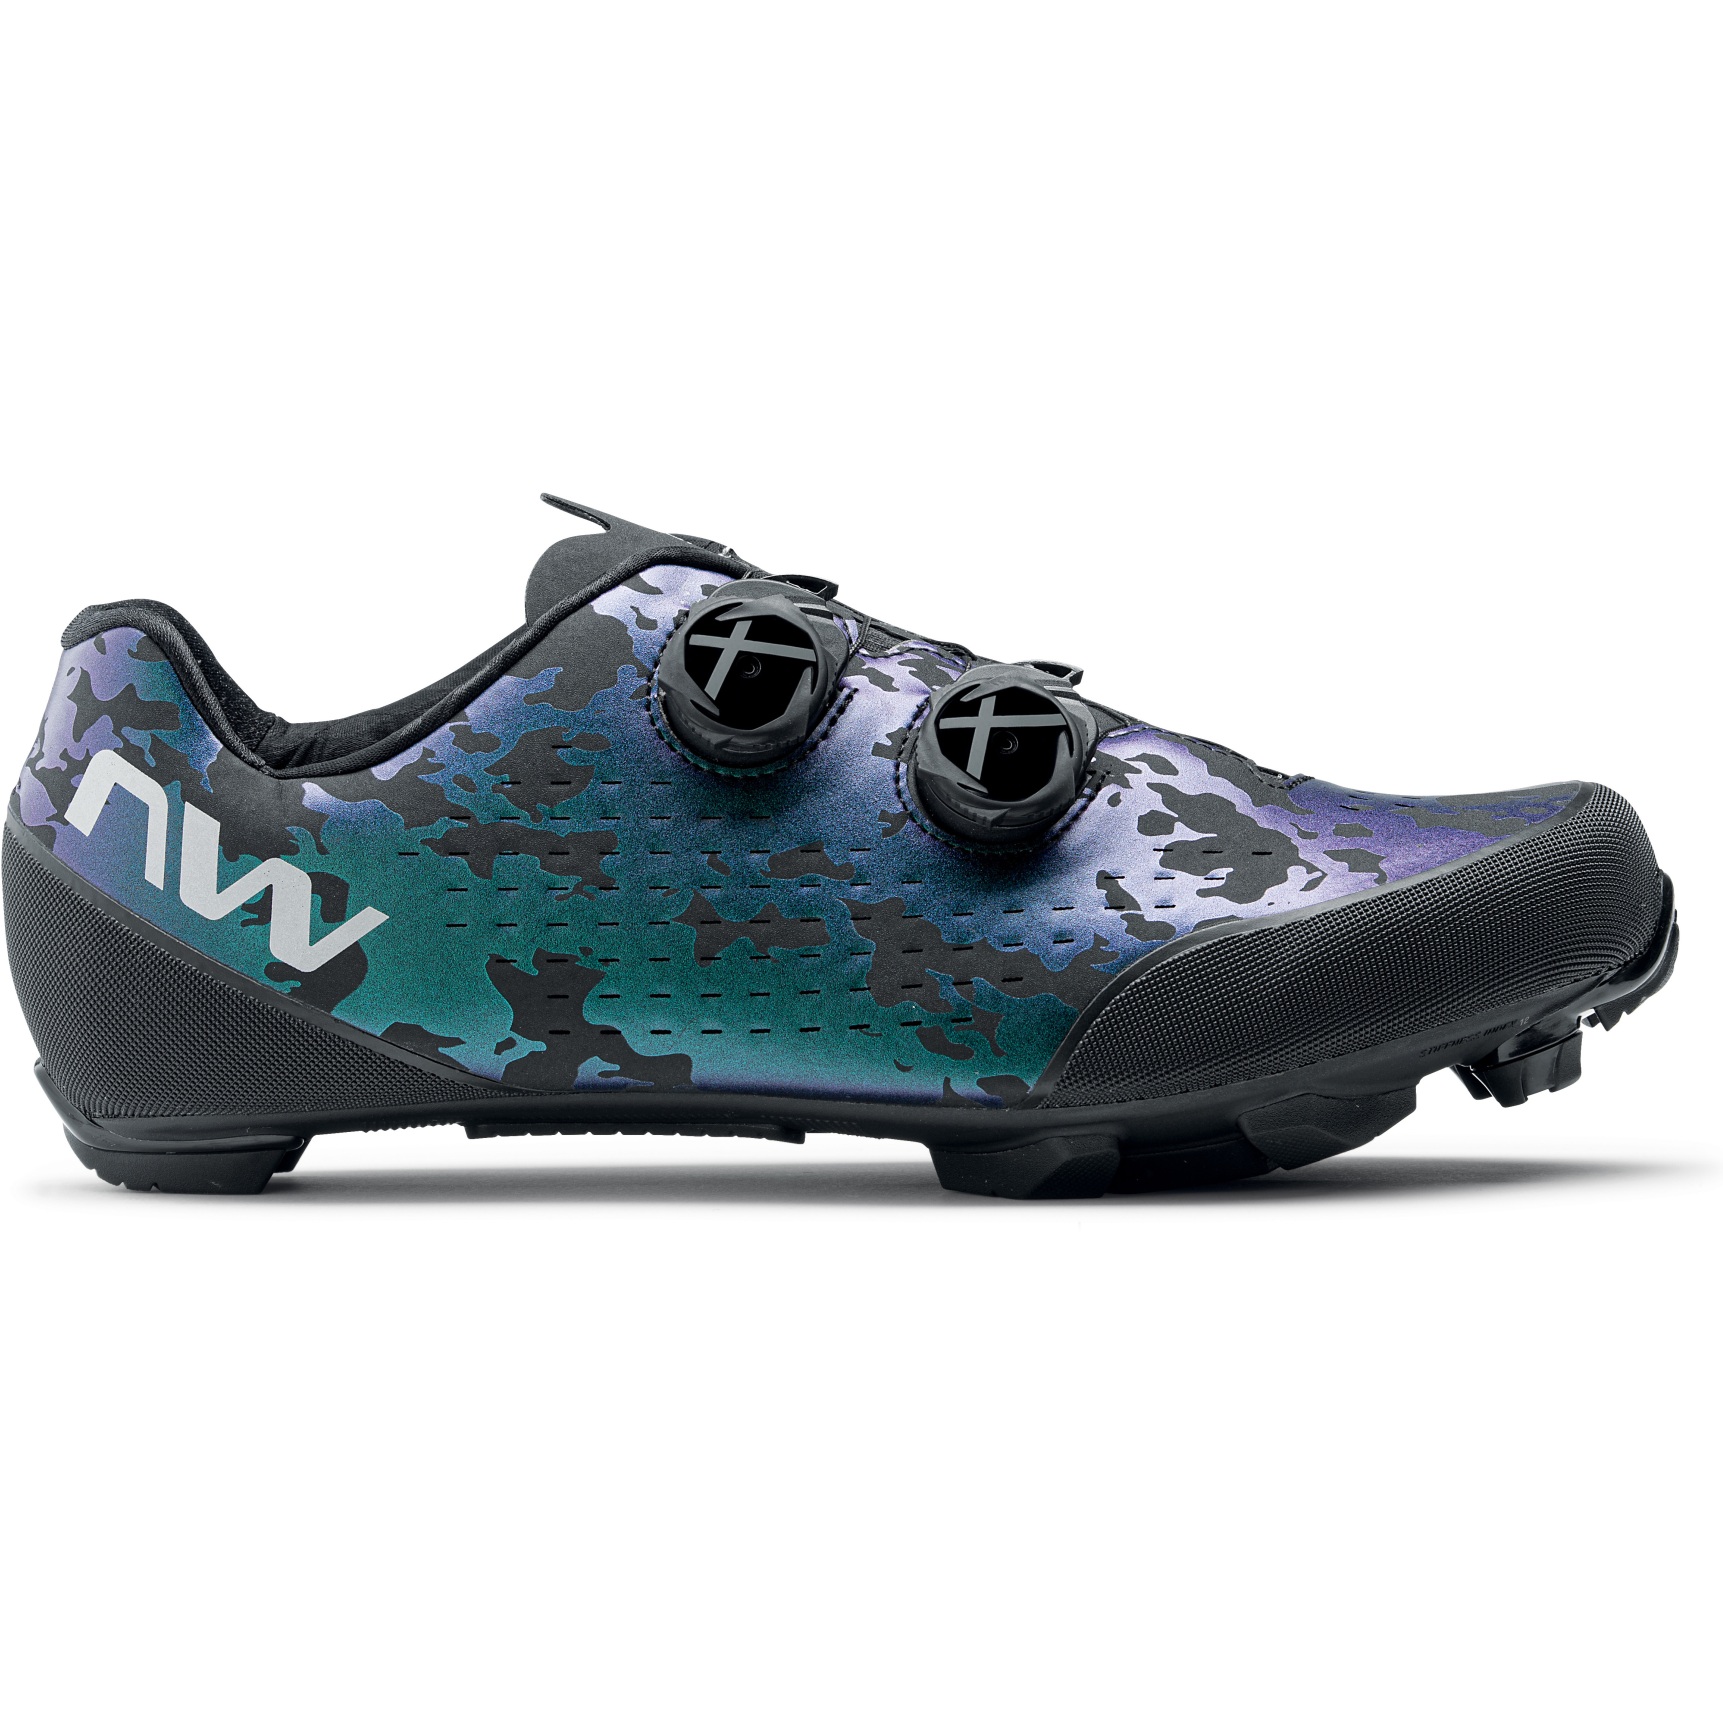 Produktbild von Northwave Rebel 3 MTB Schuhe - iridescent 90